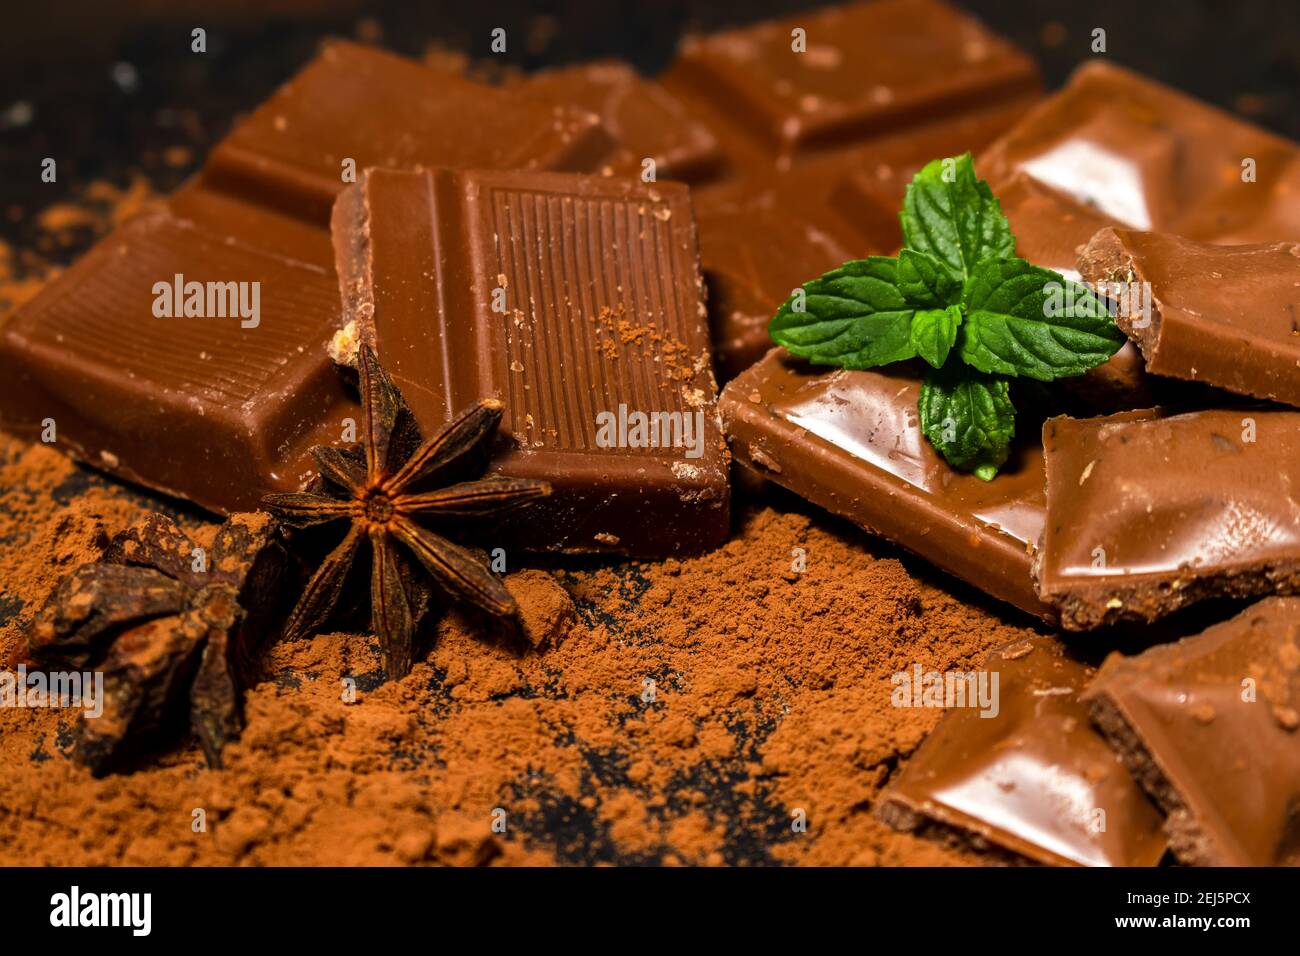 Diversi pezzi di cioccolato fondente e polvere di cacao su una superficie scura. Foglie di menta e semi di anice stellato completano l'immagine. Foto Stock